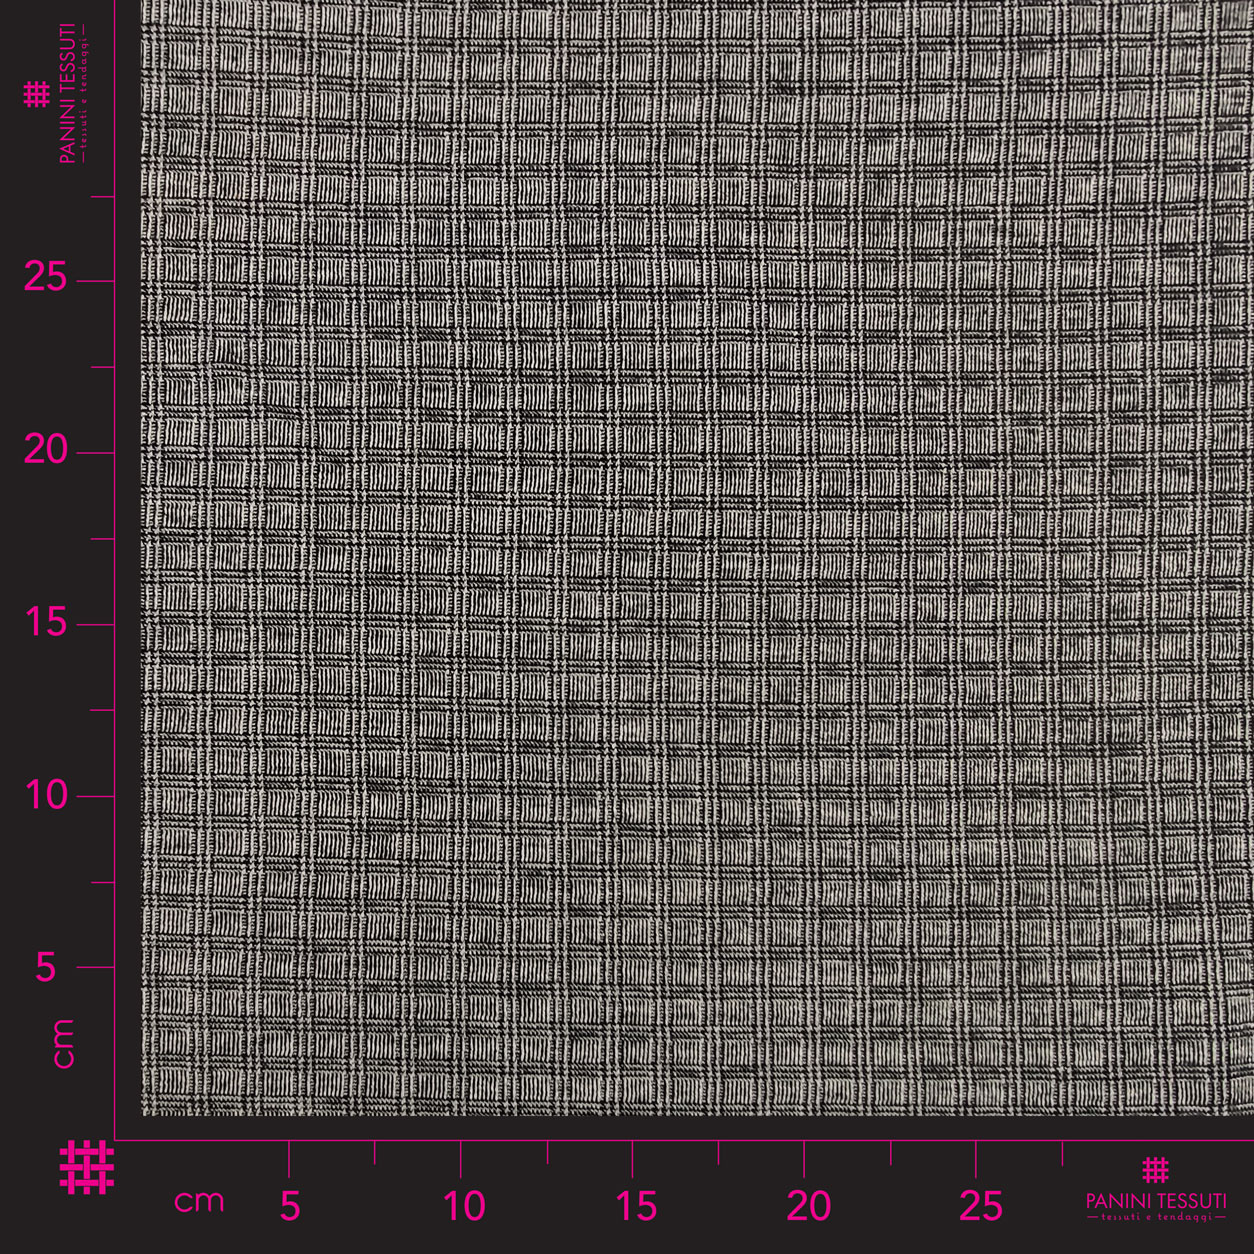 tessuto-maglia-punto-milano-quadretti-grigio